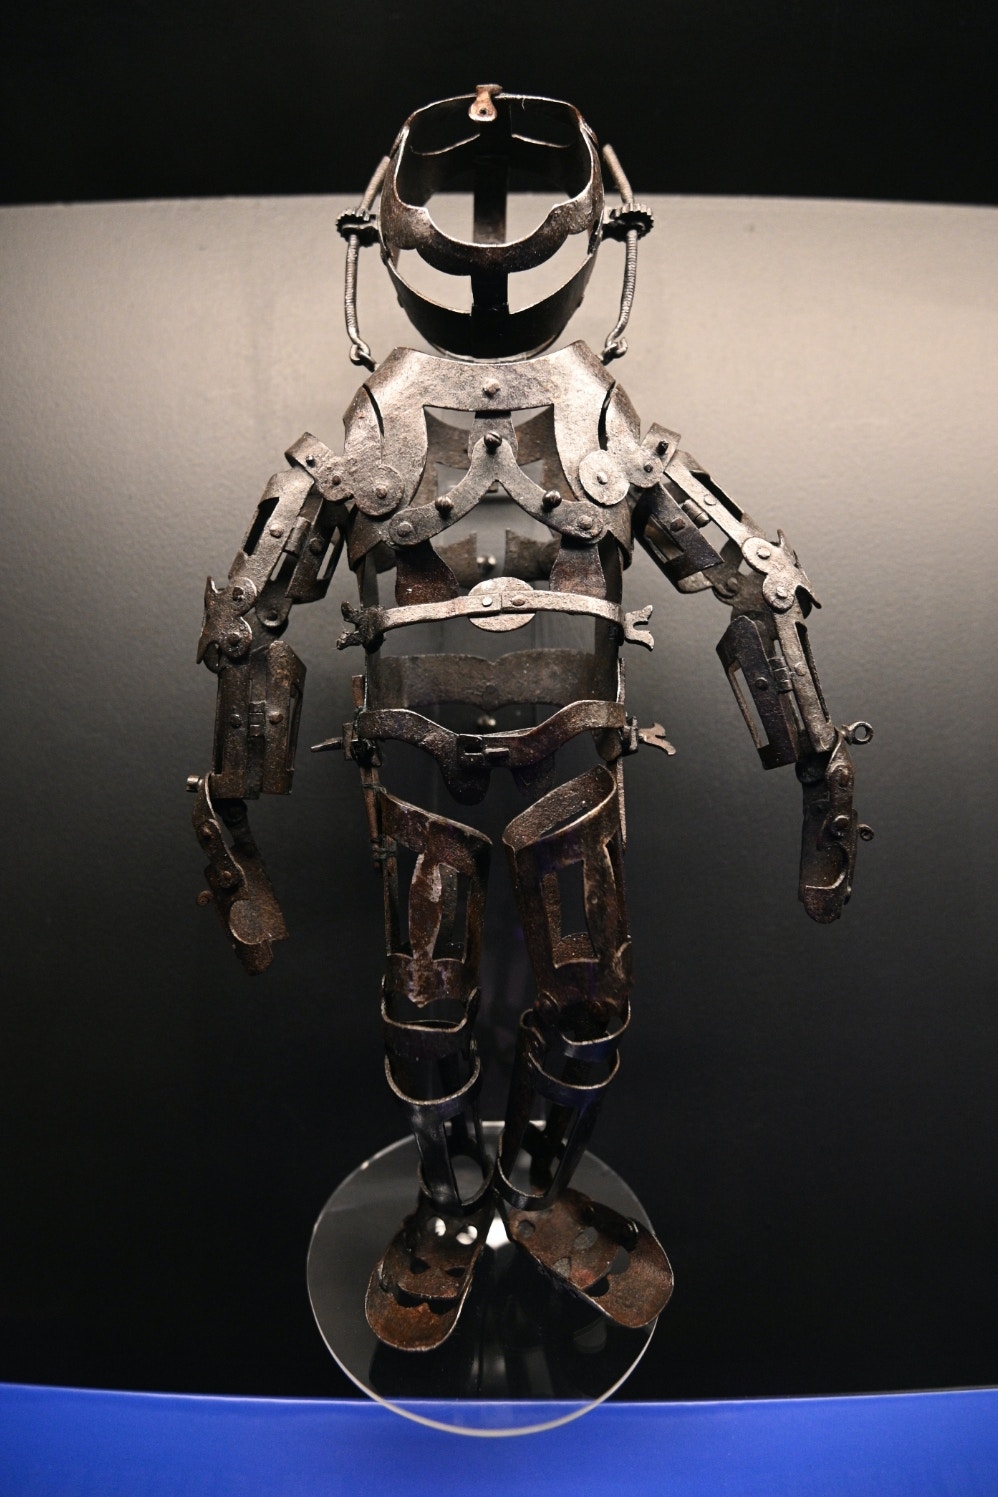 科學館明起舉行機械人展覽一睹世上最像真 仿生少女 機械人 香港01 社會新聞